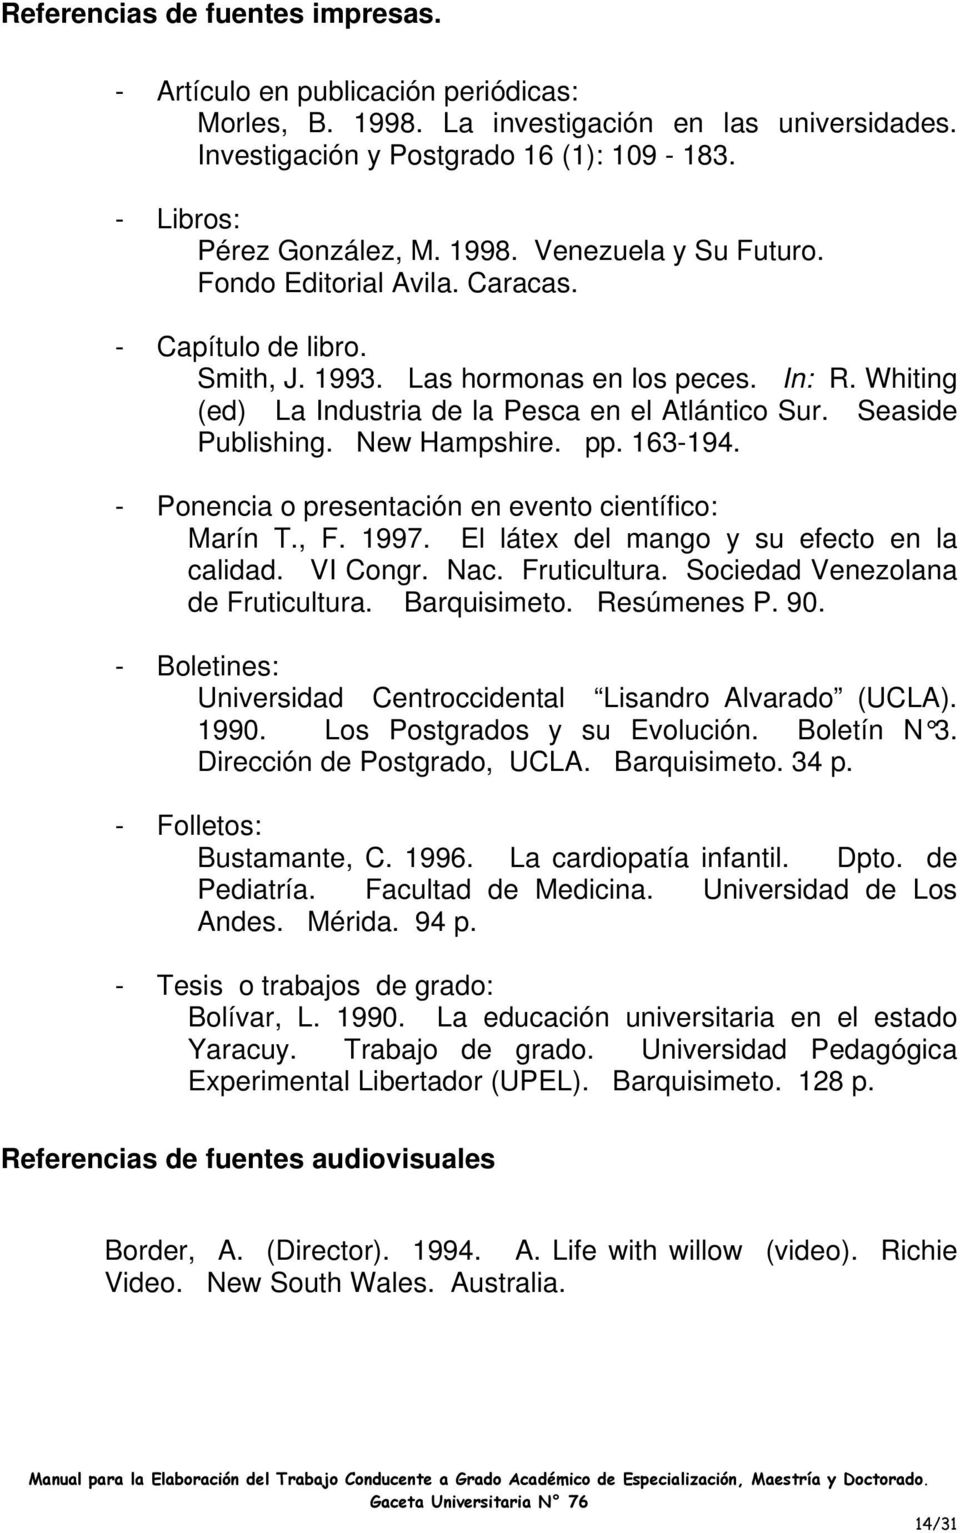 Seaside Publishing. New Hampshire. pp. 163-194. - Ponencia o presentación en evento científico: Marín T., F. 1997. El látex del mango y su efecto en la calidad. VI Congr. Nac. Fruticultura.